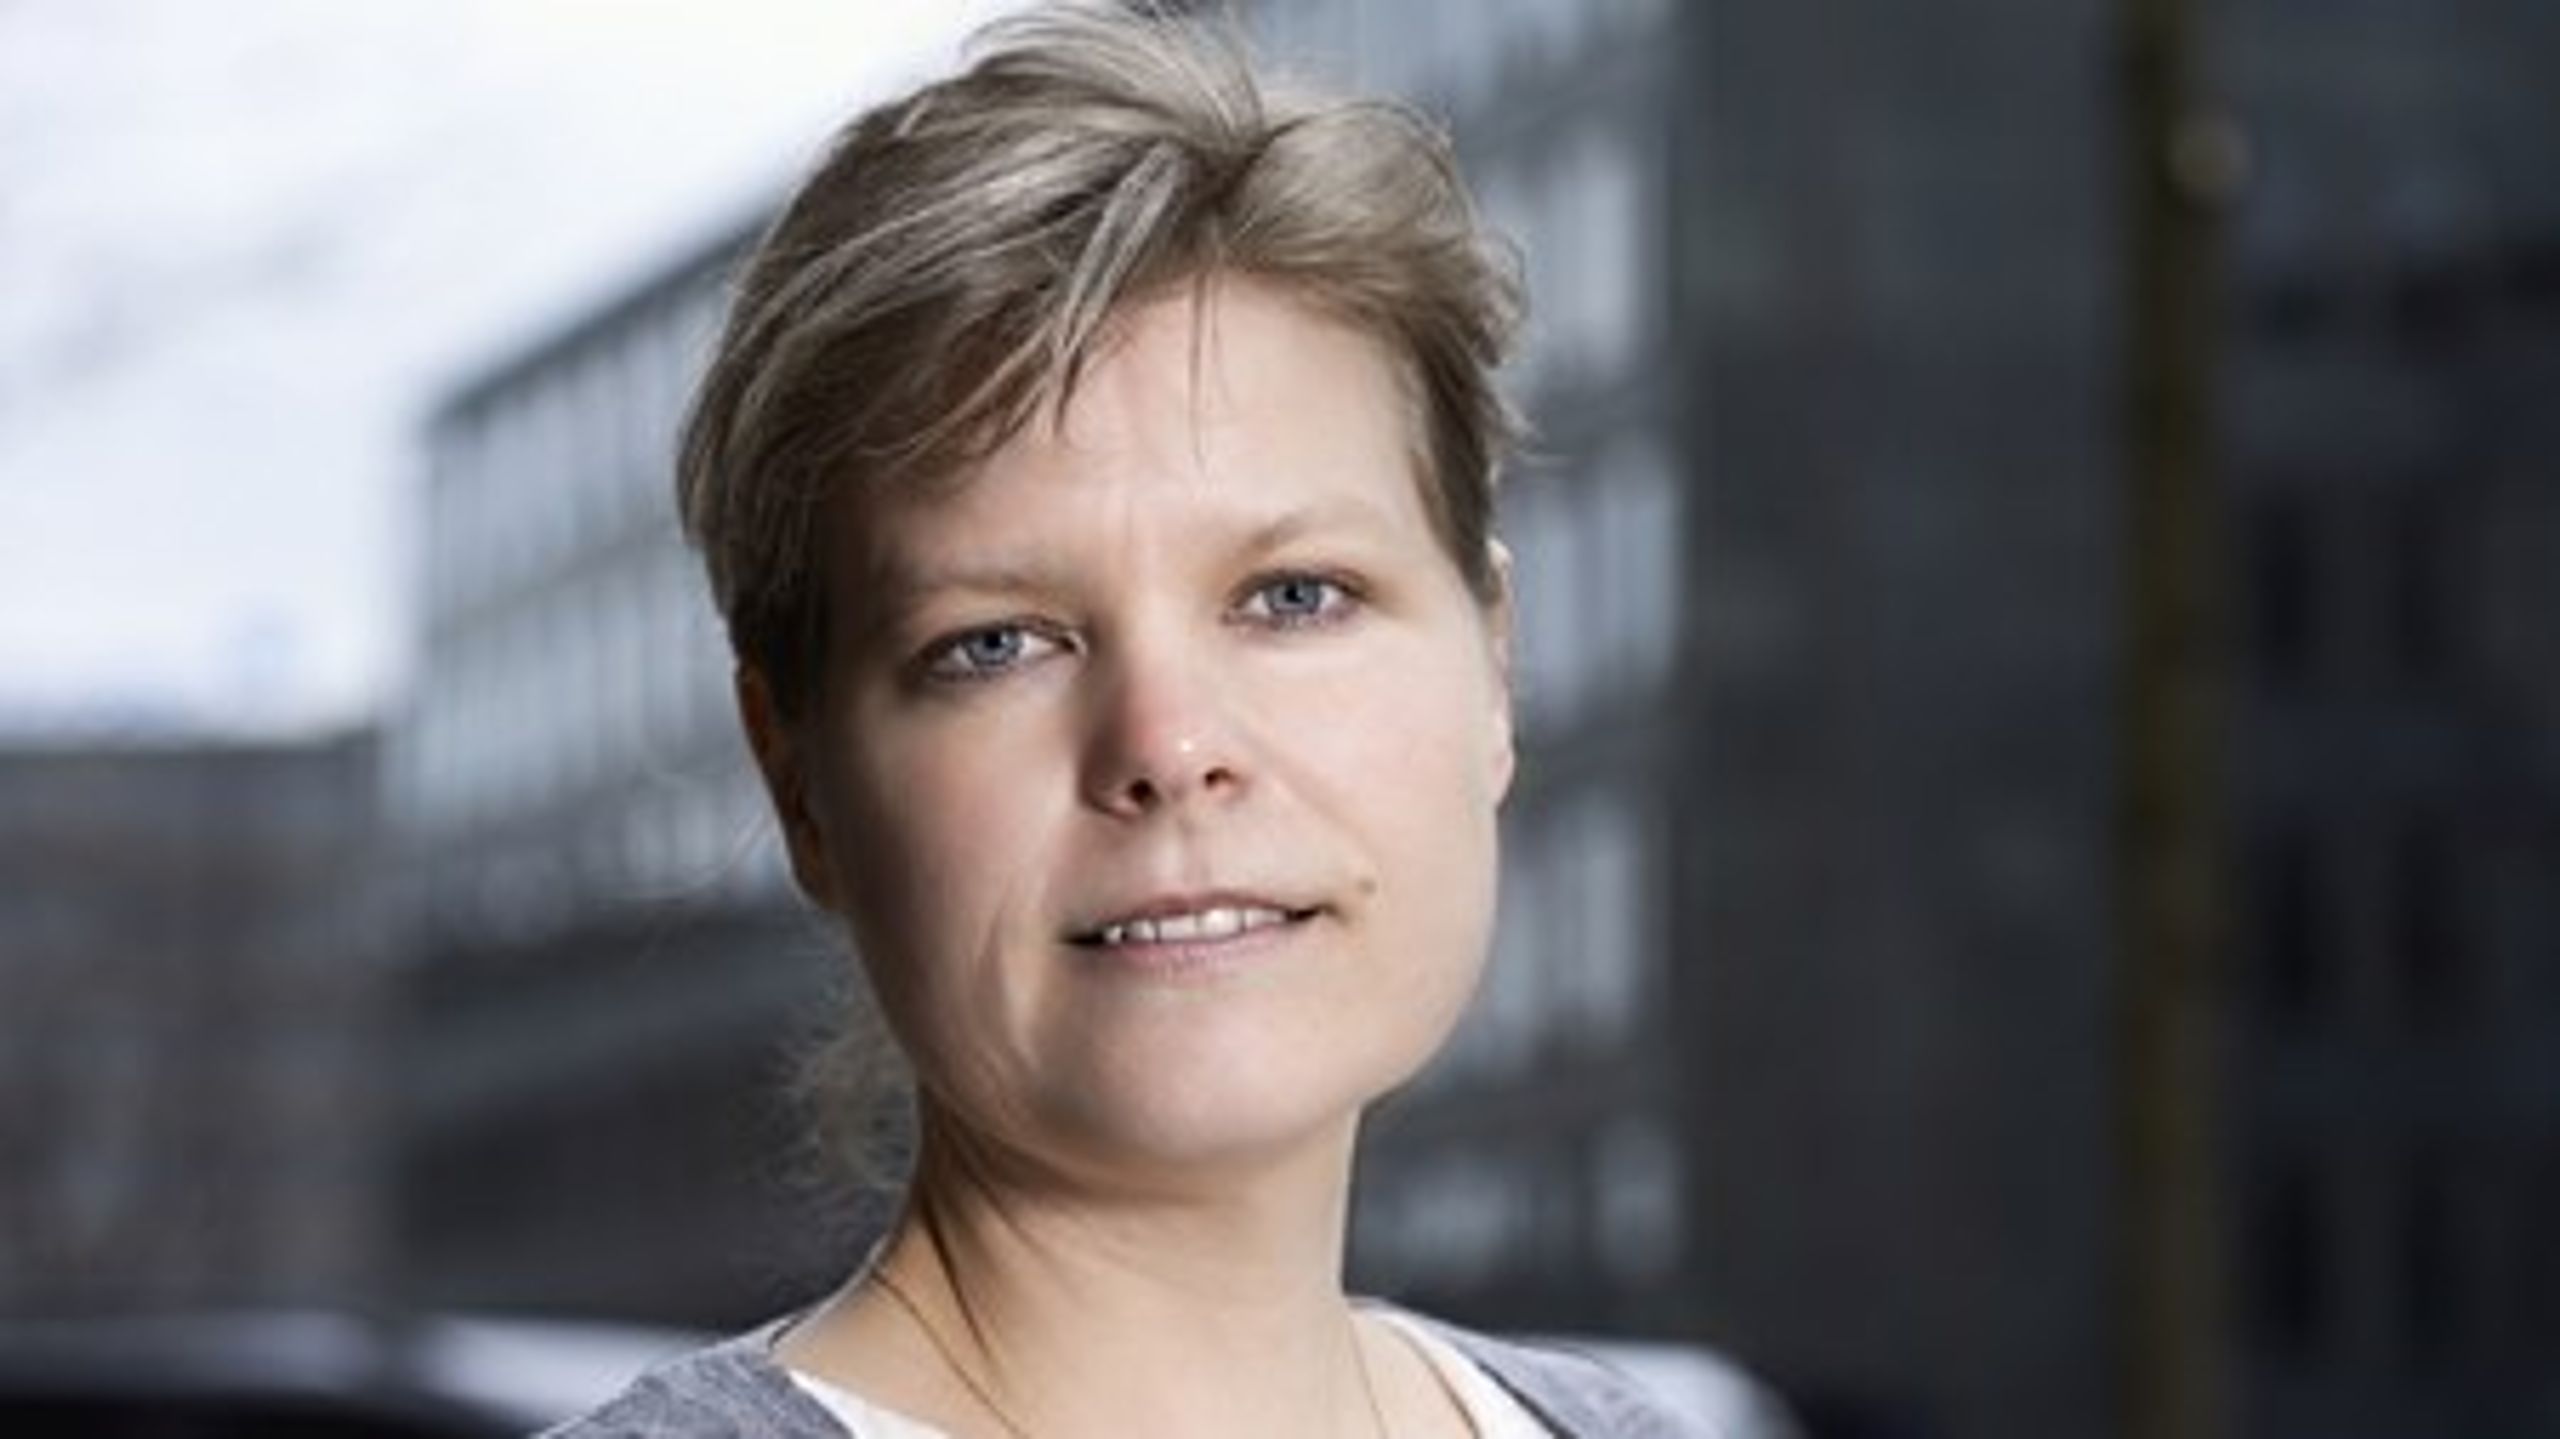 Indsatsen mod madspild er et godt eksempel på, at den danske detailhandel uden regulering&nbsp;viser ansvar, skriver Lotte Engbæk Larsen, markedschef i Dansk Erhverv.